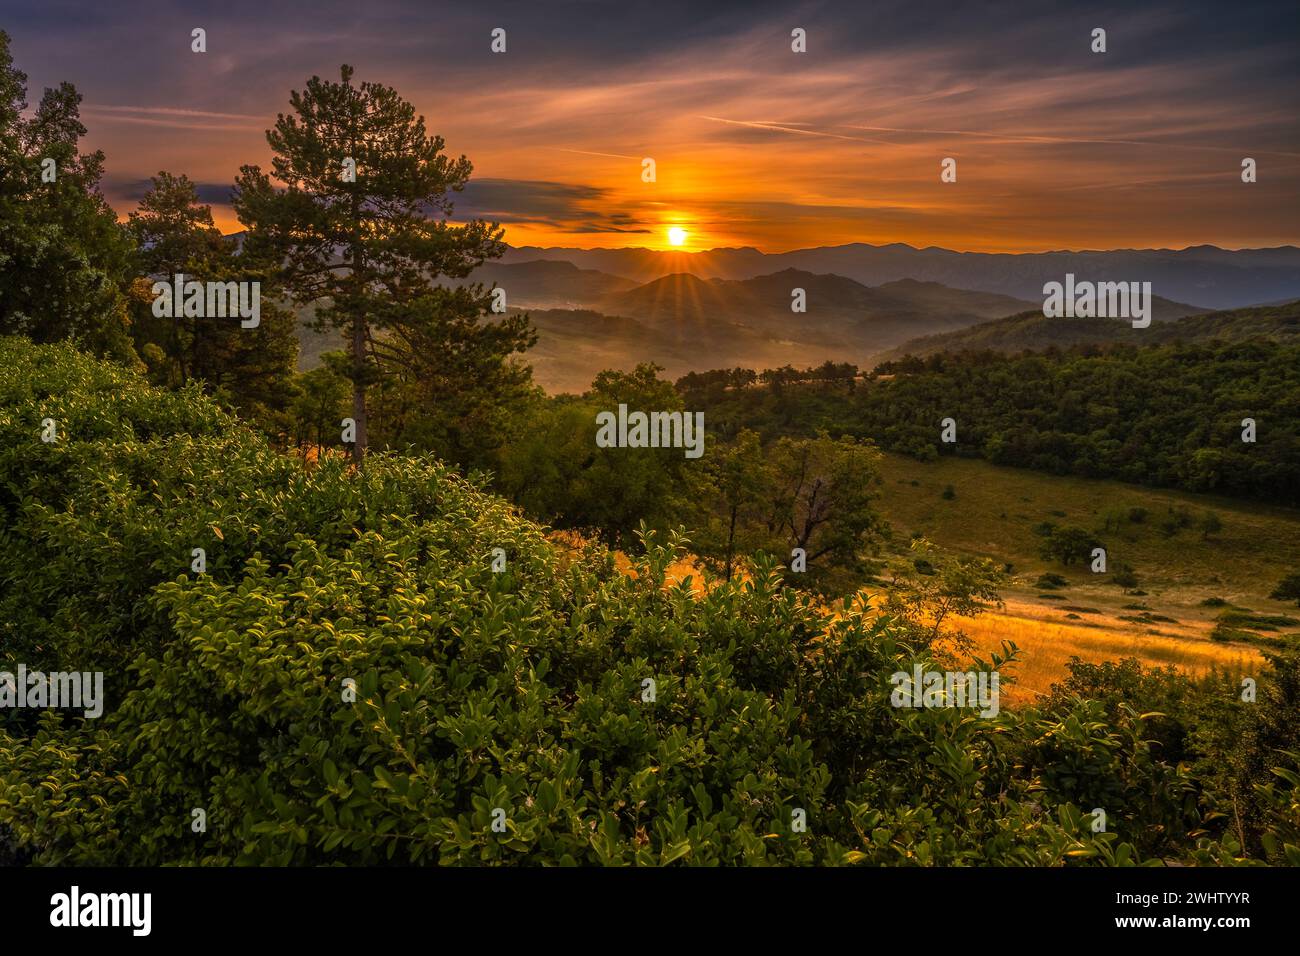 Lever de soleil romantique dans un petit village à la campagne dans la nature sauvage slovène. Un tel moment calme et paisible quand le soleil se lève au-dessus de l'horizon. Banque D'Images